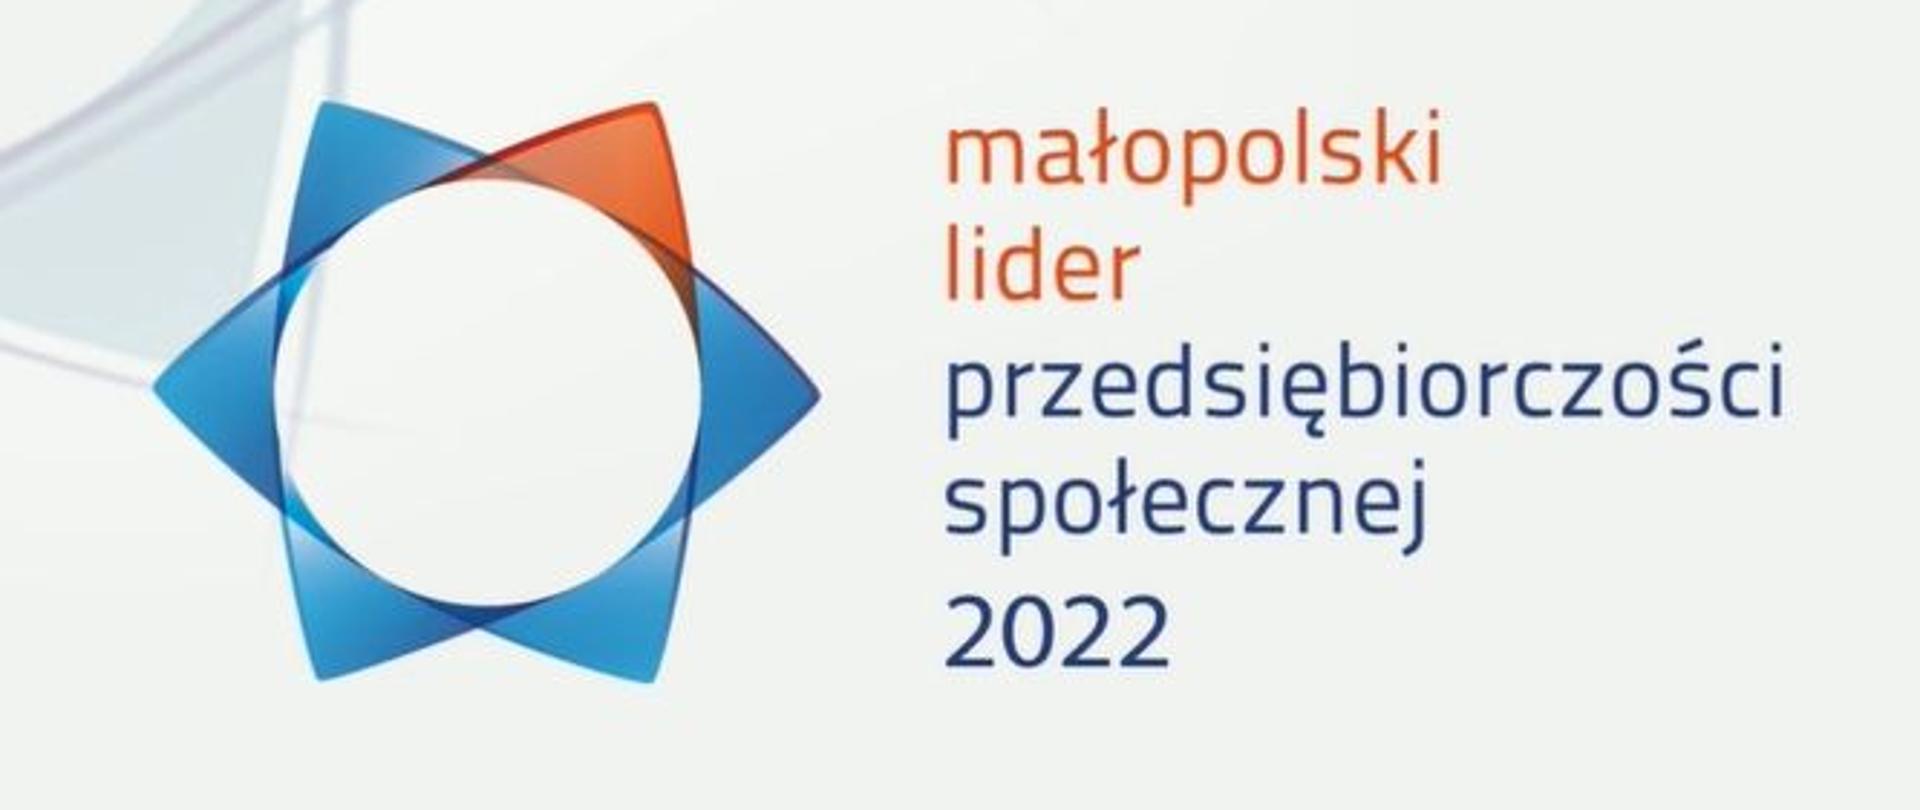 zdjęcie przedstawia logo oraz napis konkurs małopolski lider przedsiębiorczości społecznej 2022